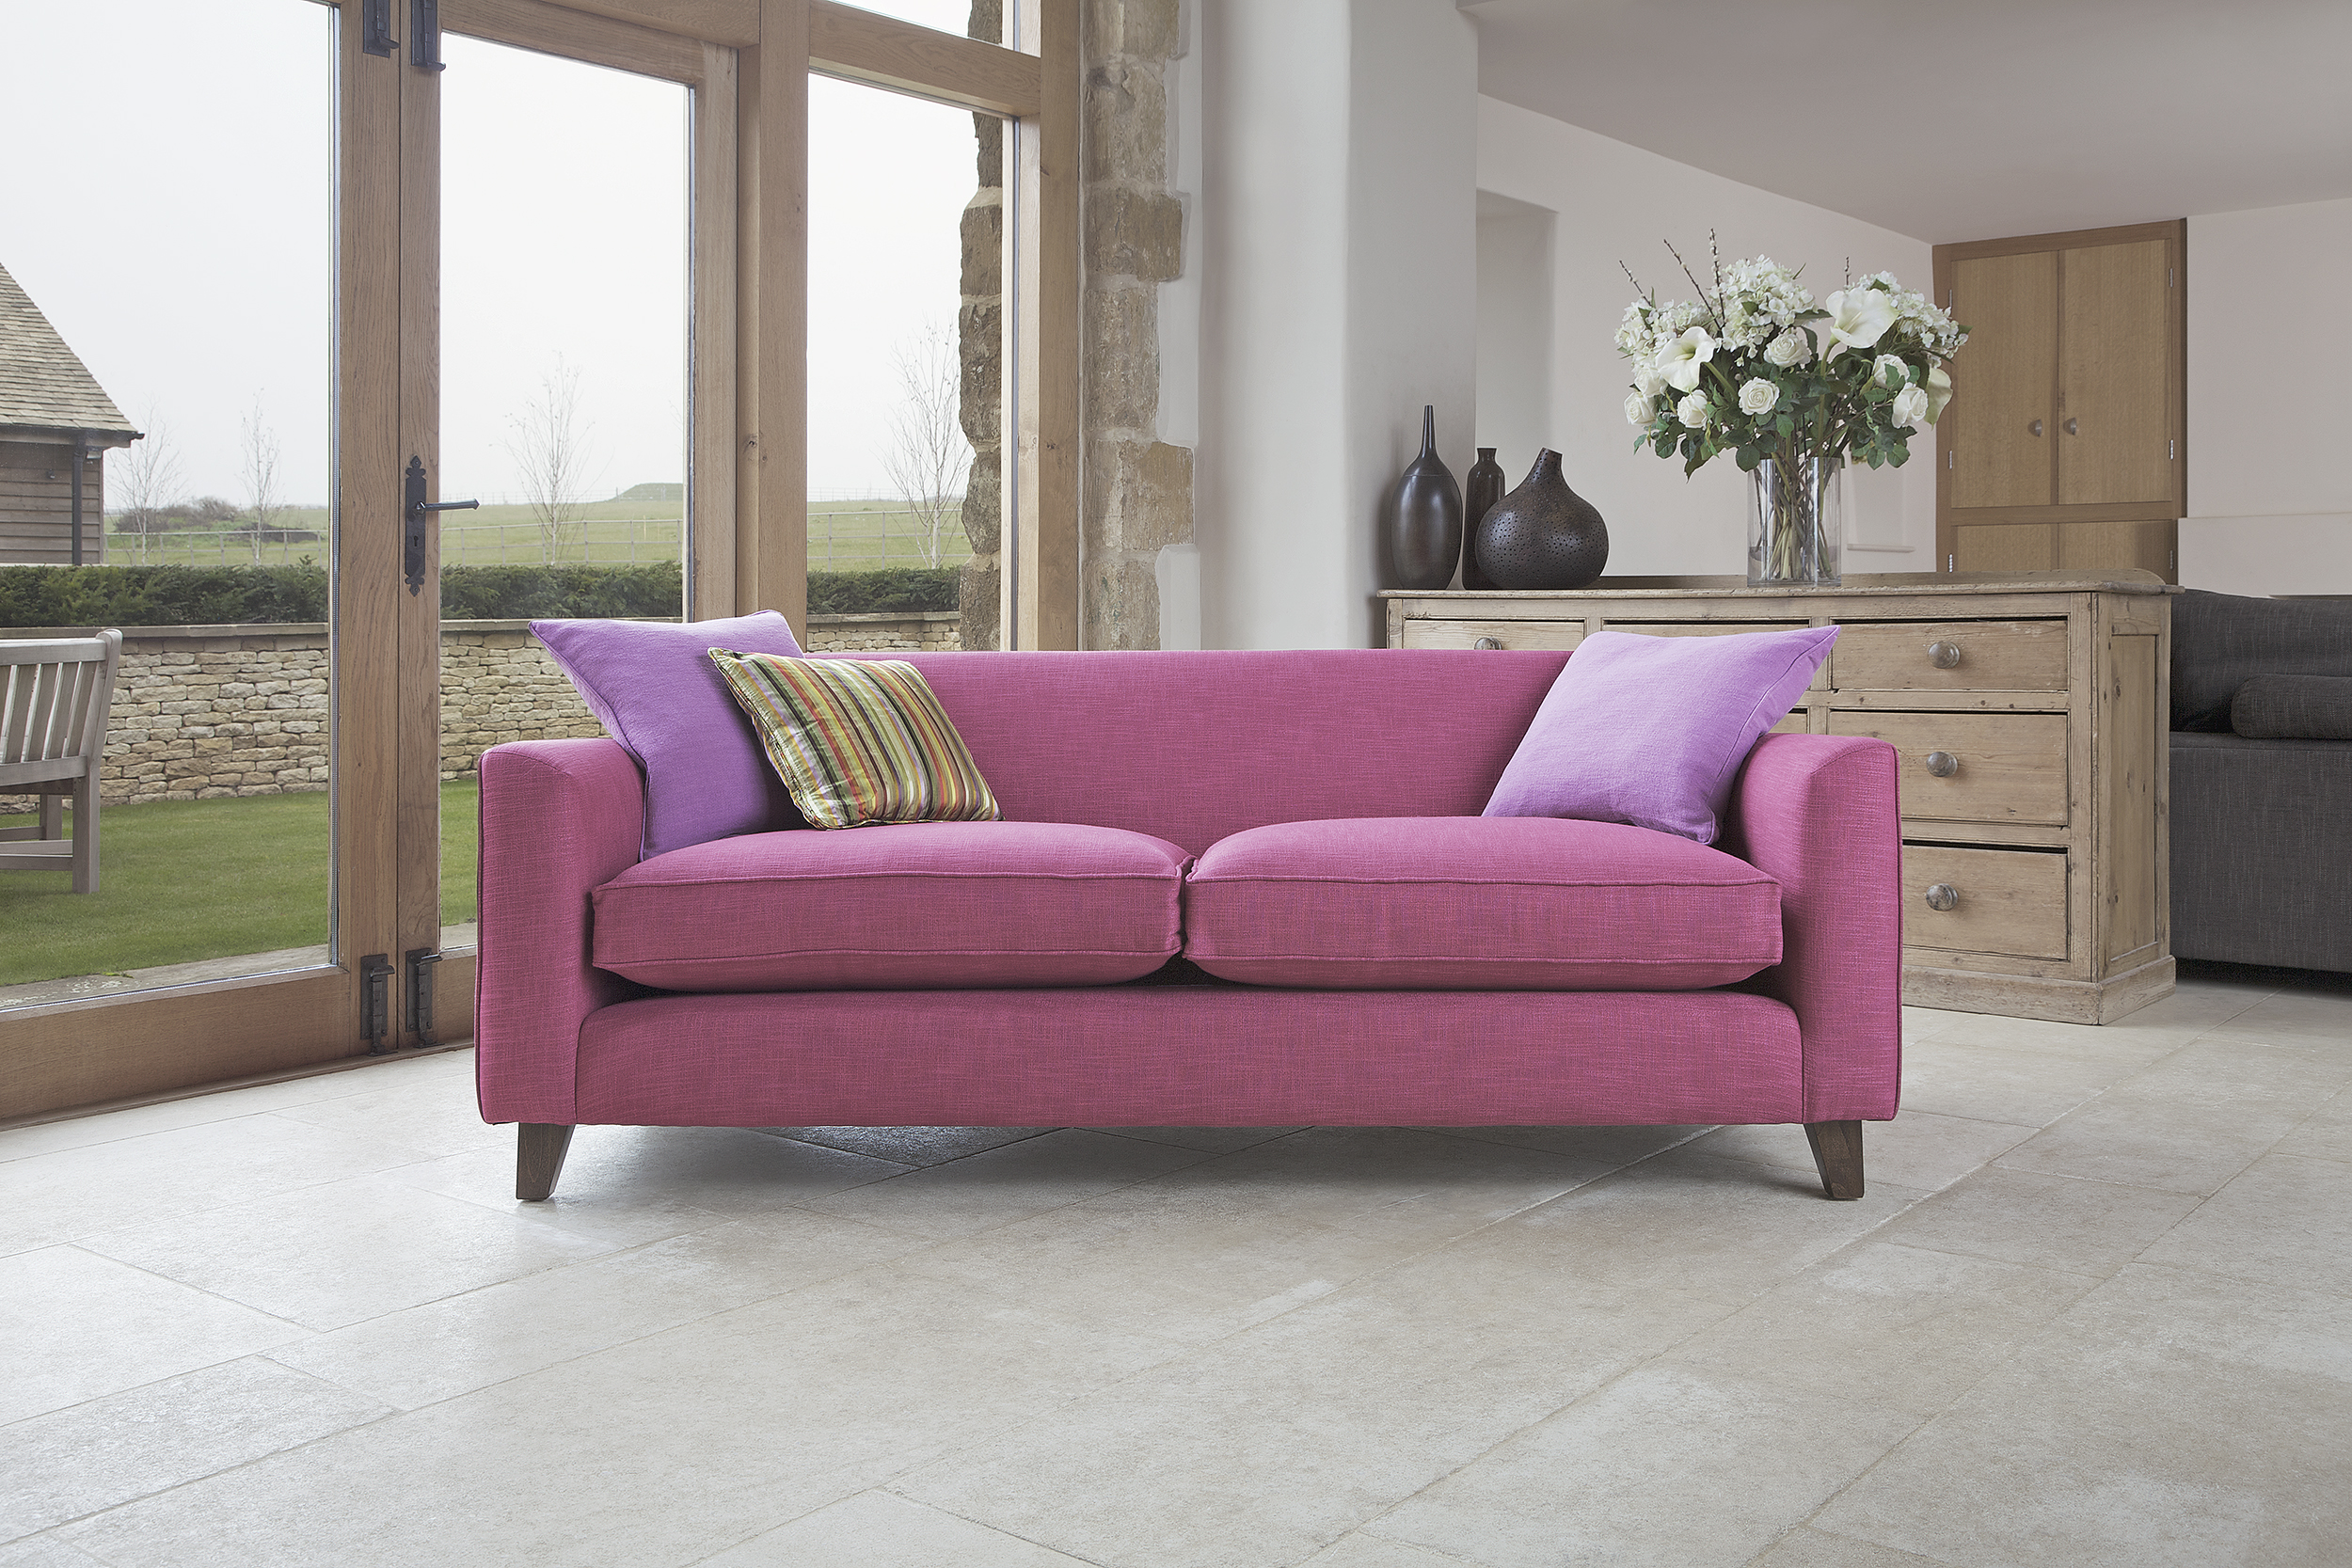  Caspa sofa, Tamarisk Designs 